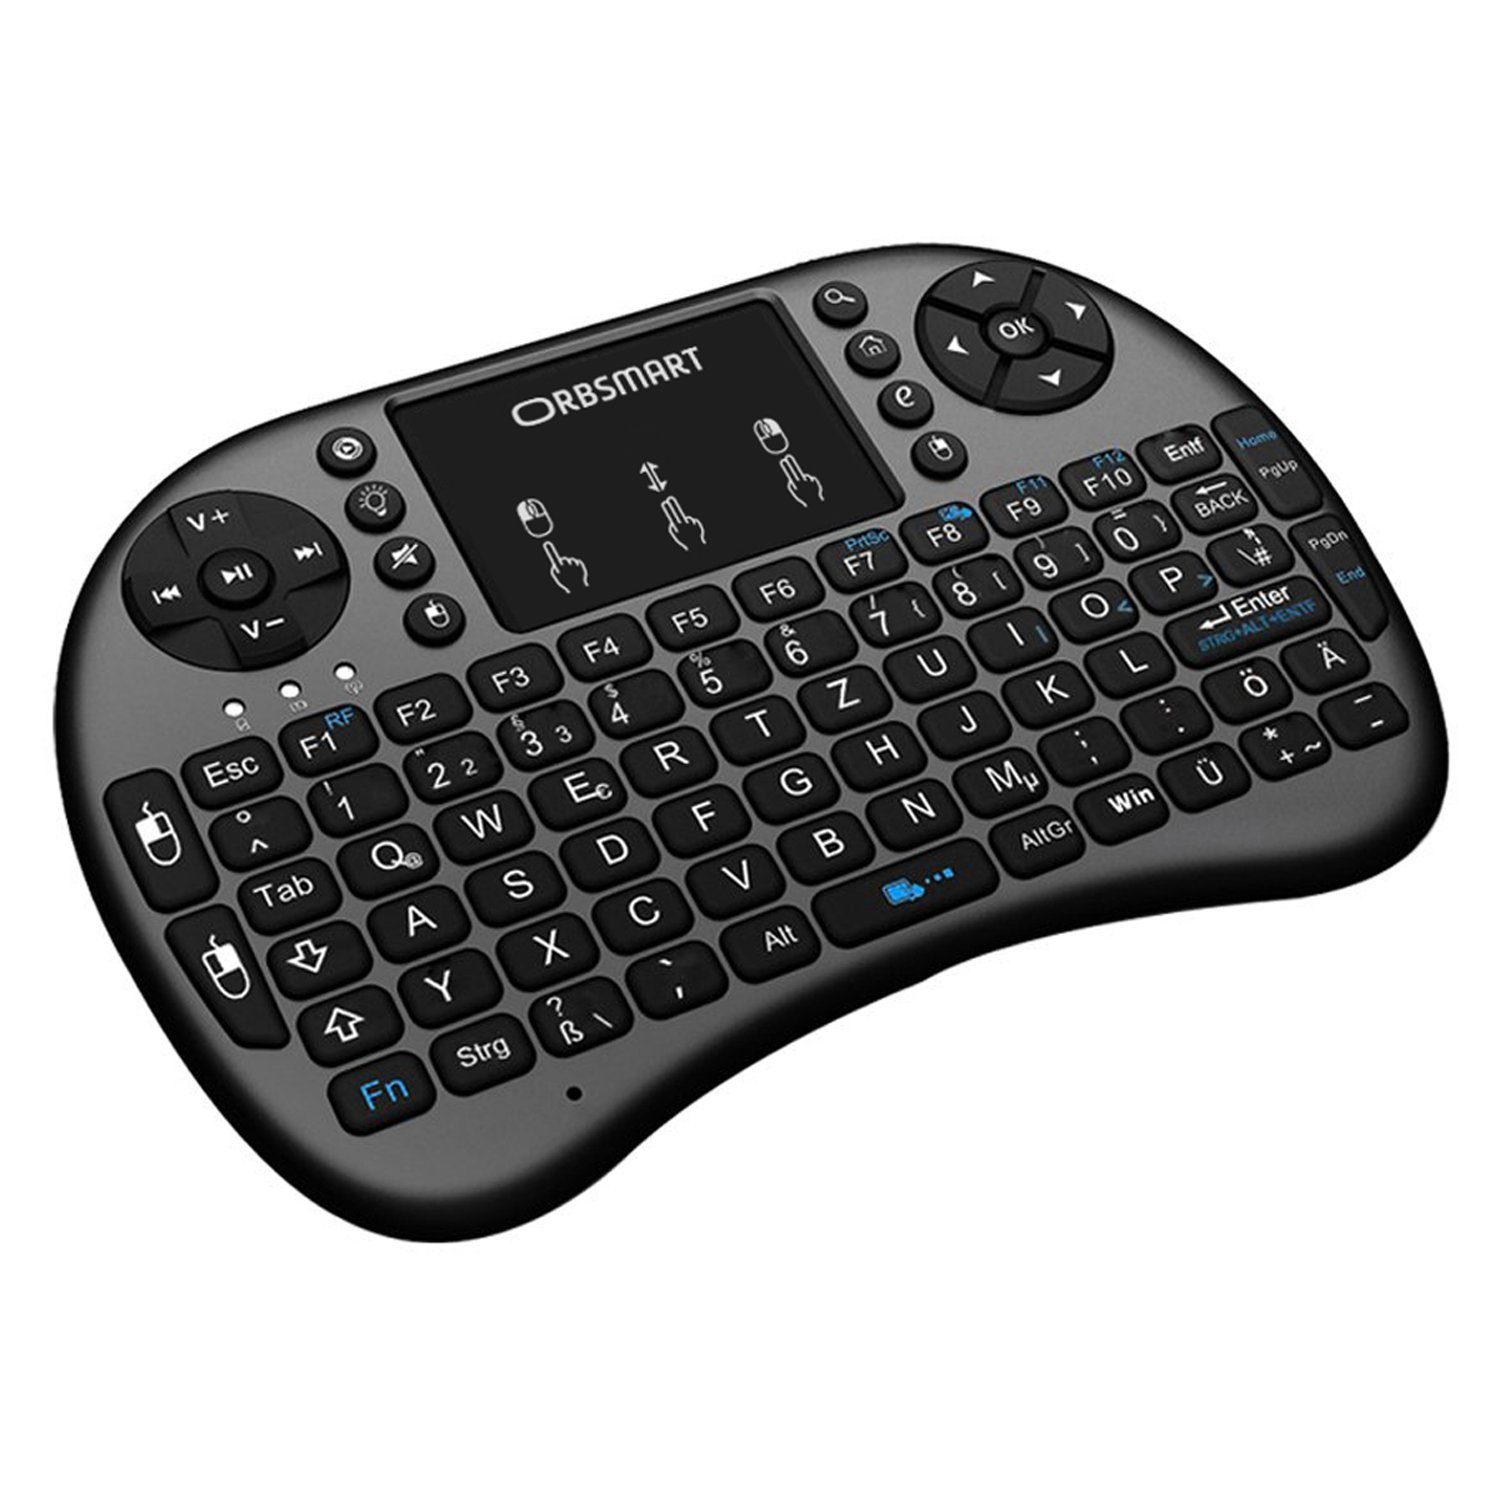 Orbsmart AM-2 Wireless-Tastatur und Touchpad (kabellos, mit integrierten LED-Beleuchtung)